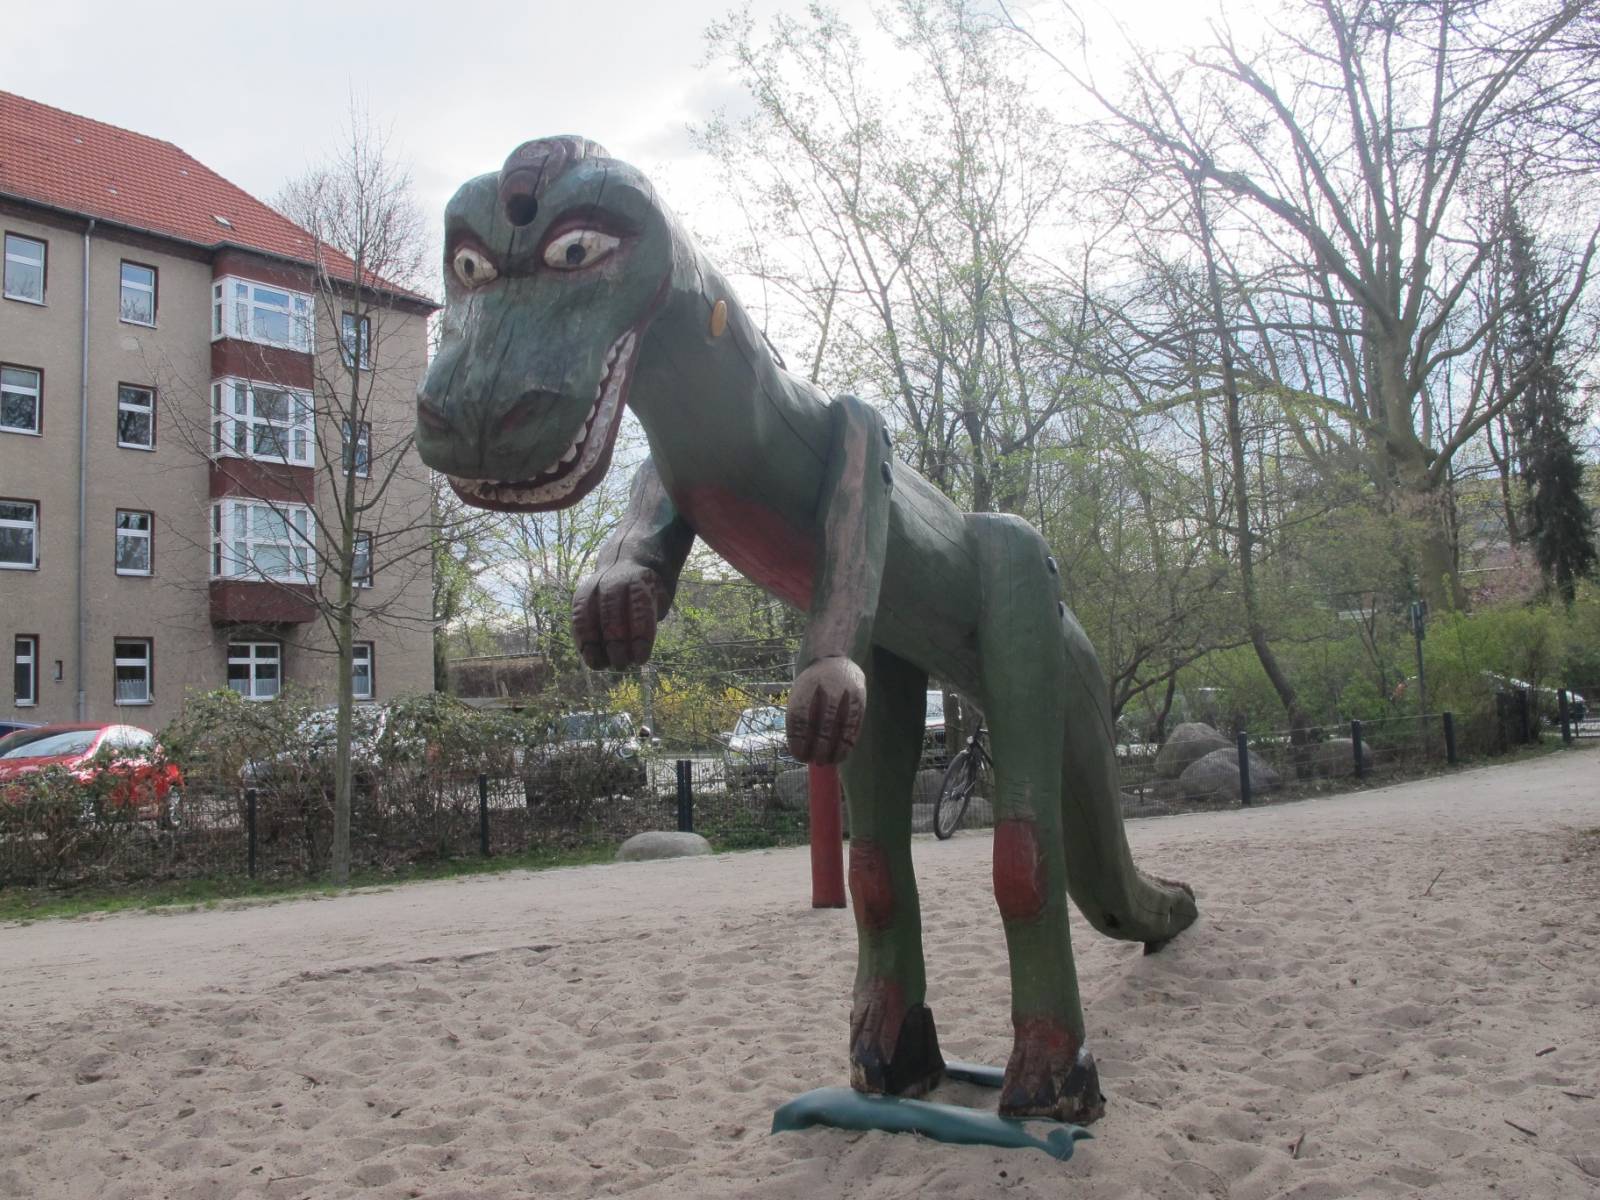 Spielplatz Am Bäkequell in Berlin